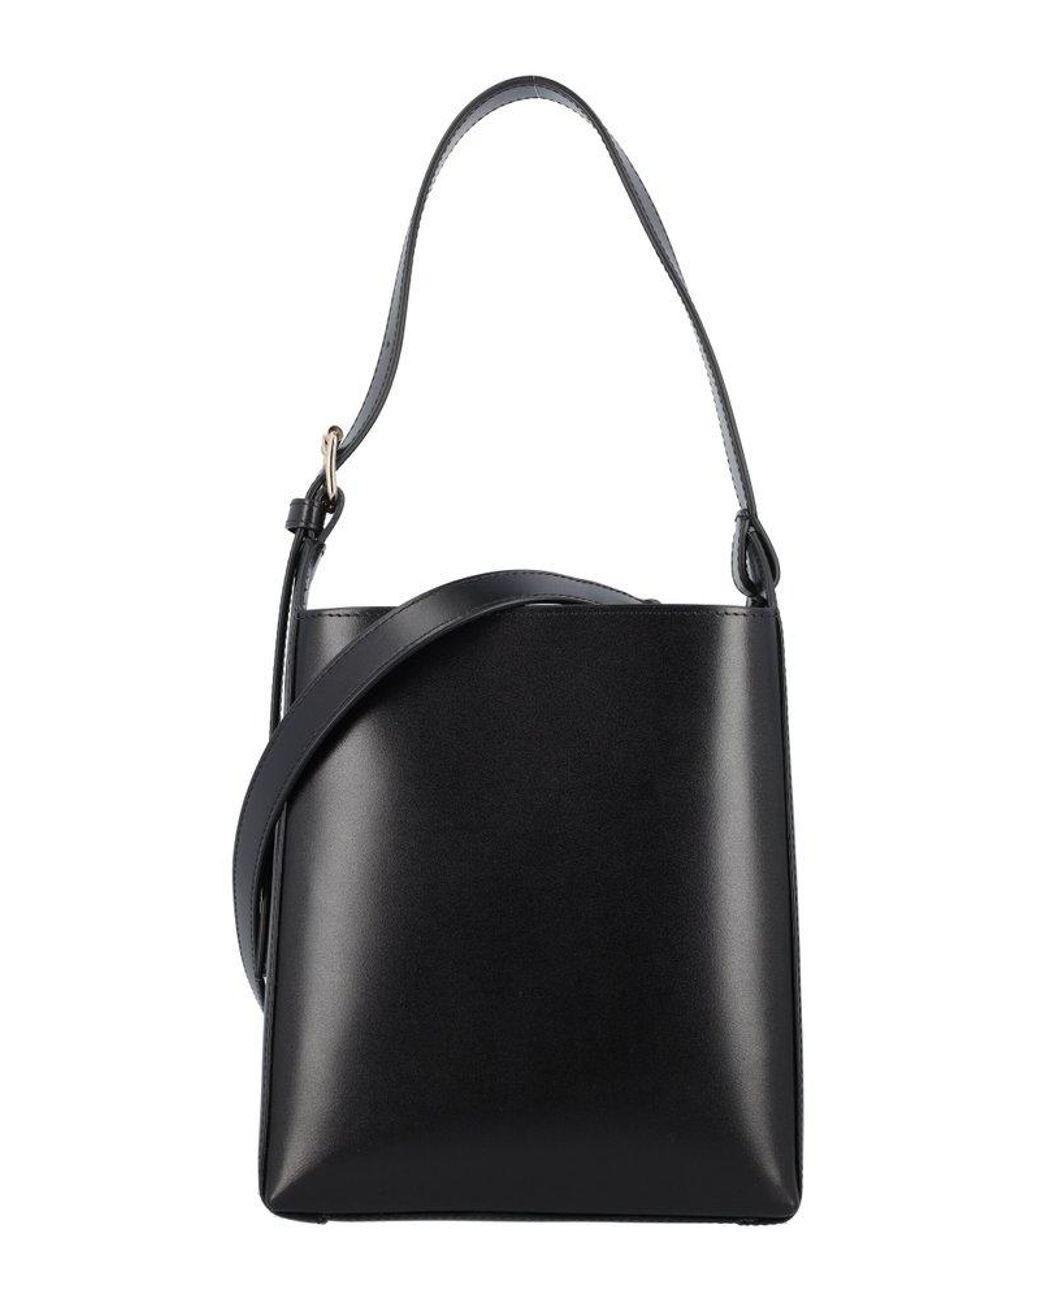 A.P.C. Virginie Small Bucket Bag in Black